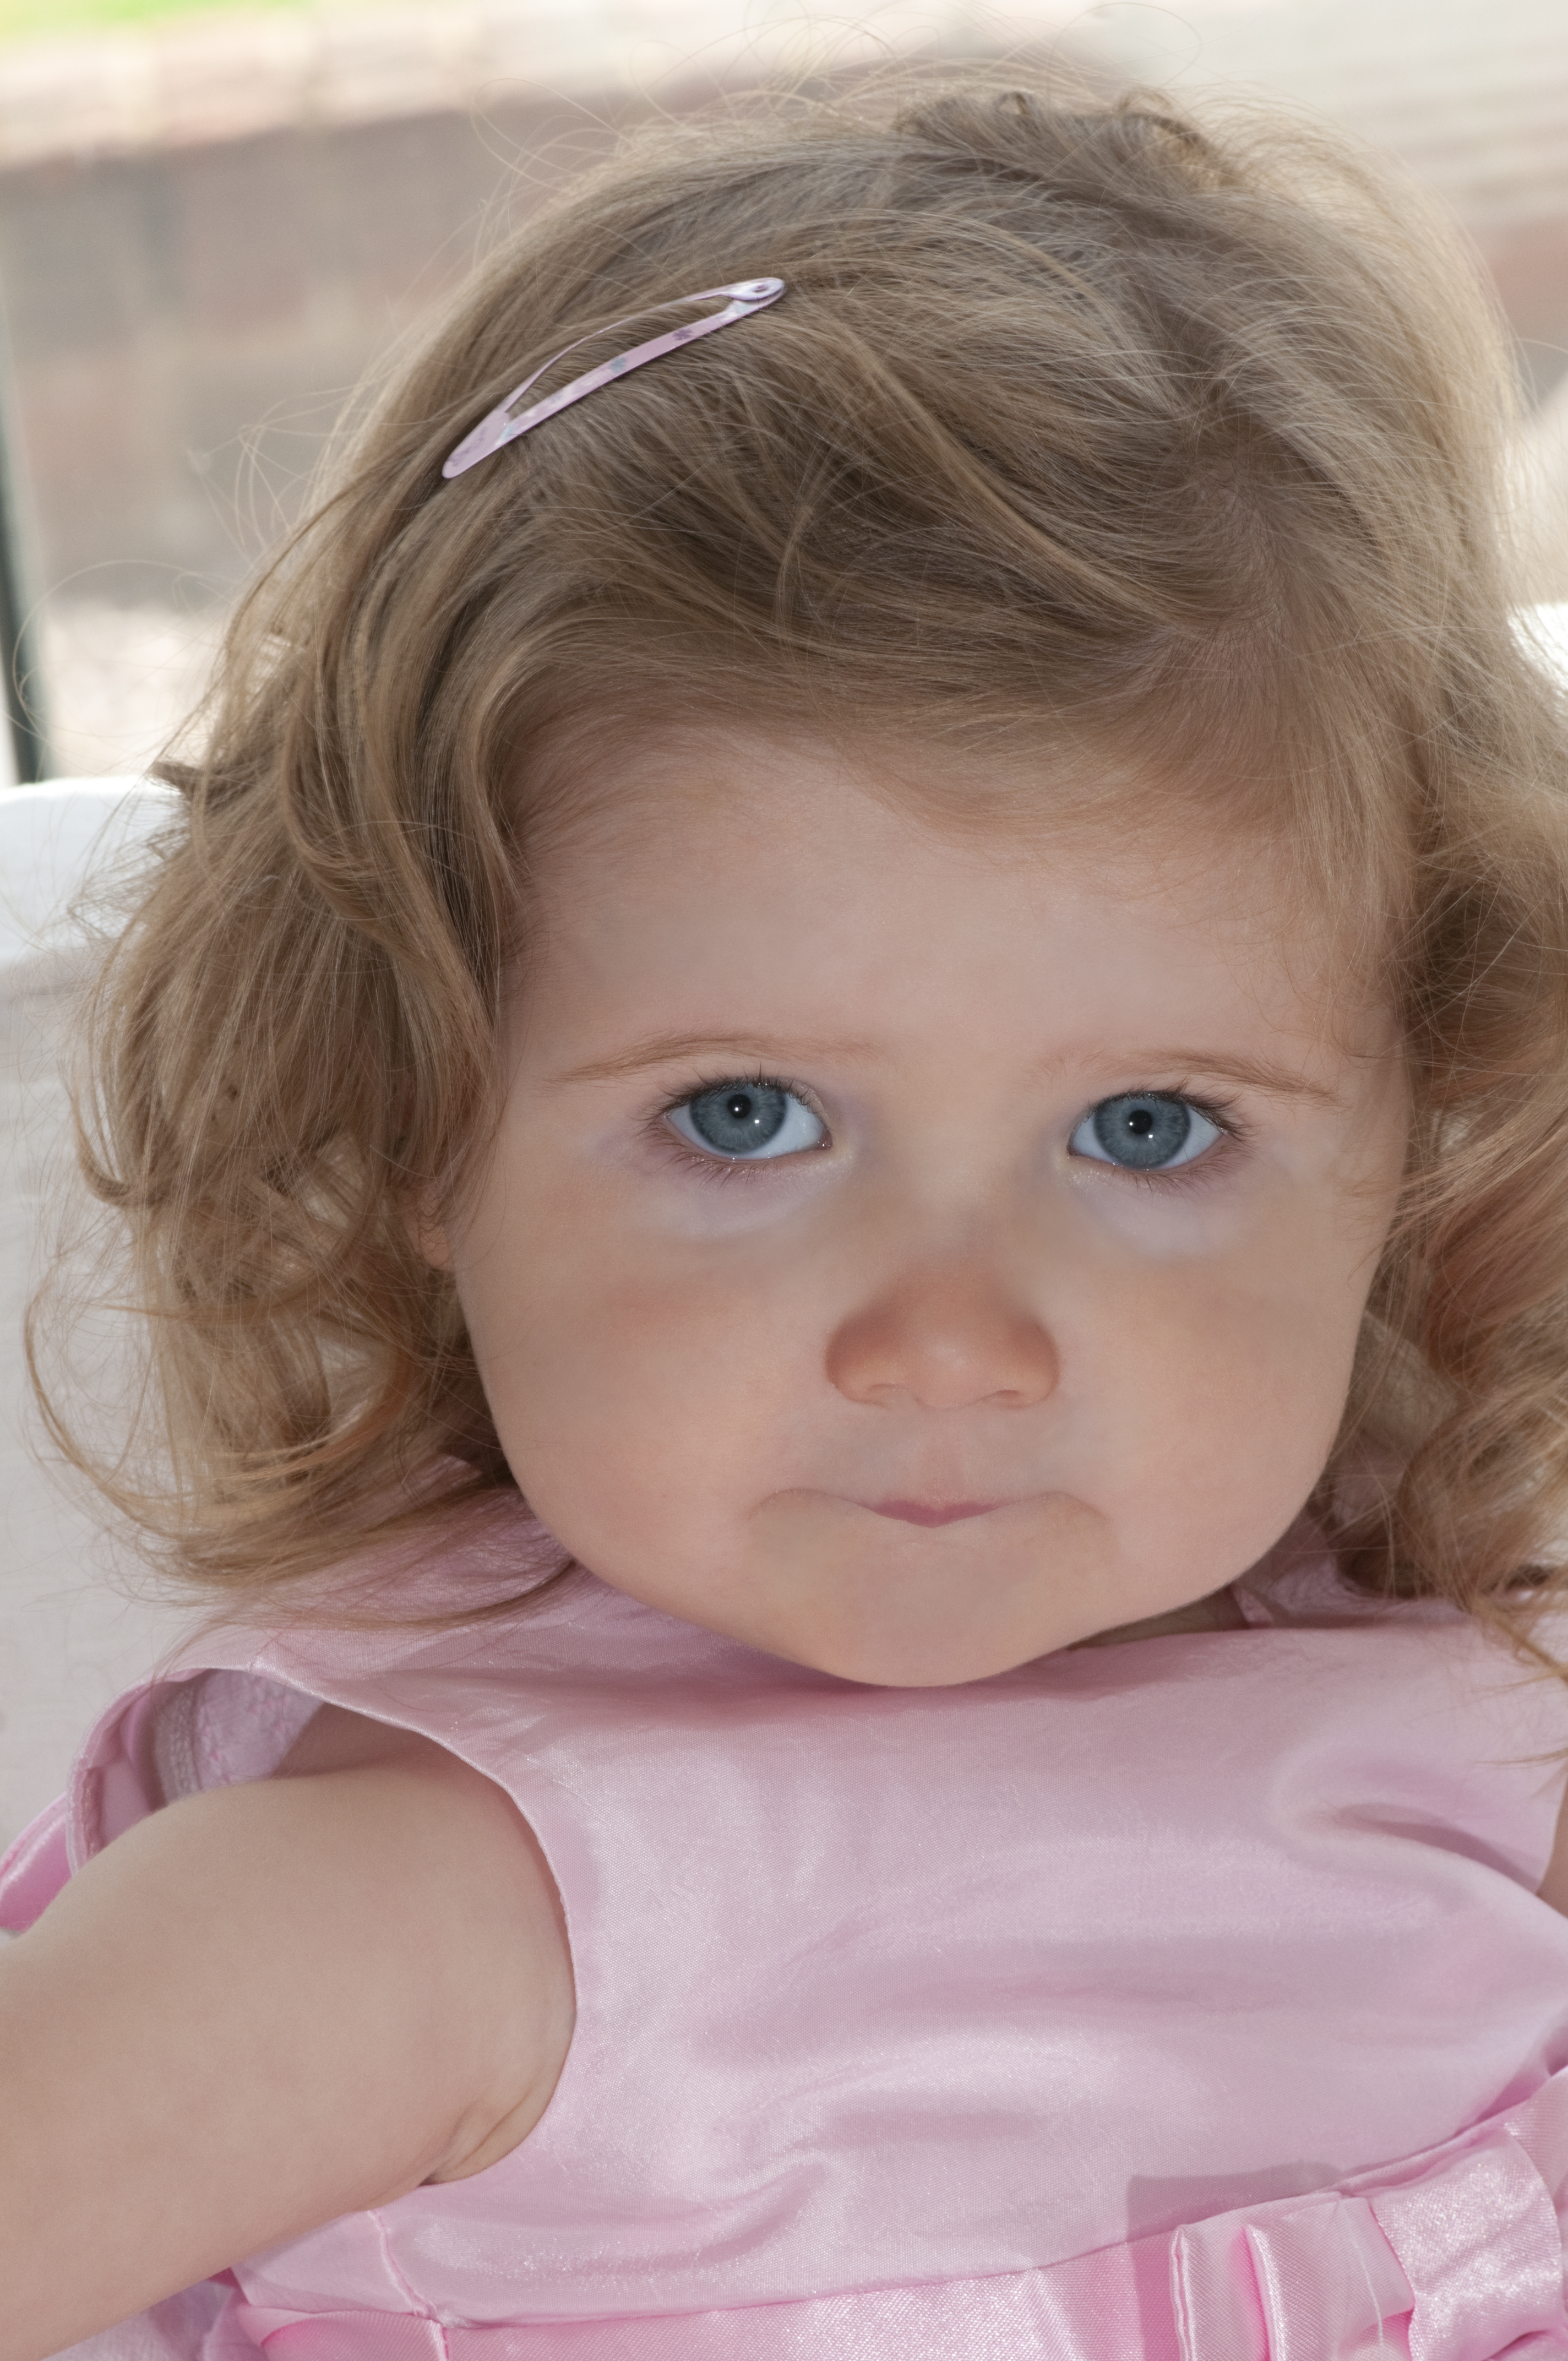 A little girl wearing a hair clip | Source: Shutterstock